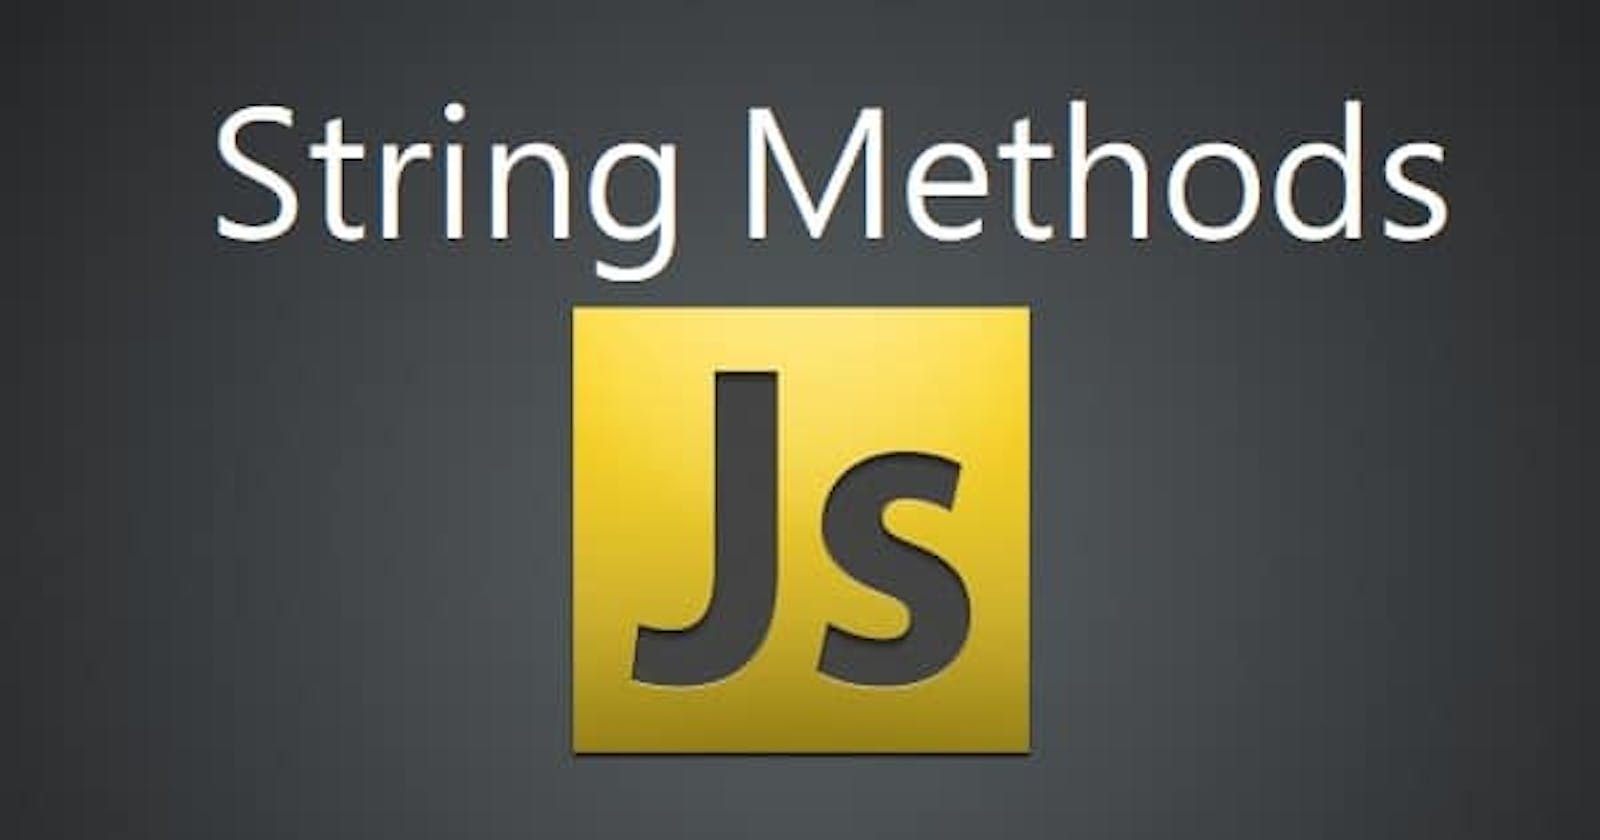 String Methods in JavaScript